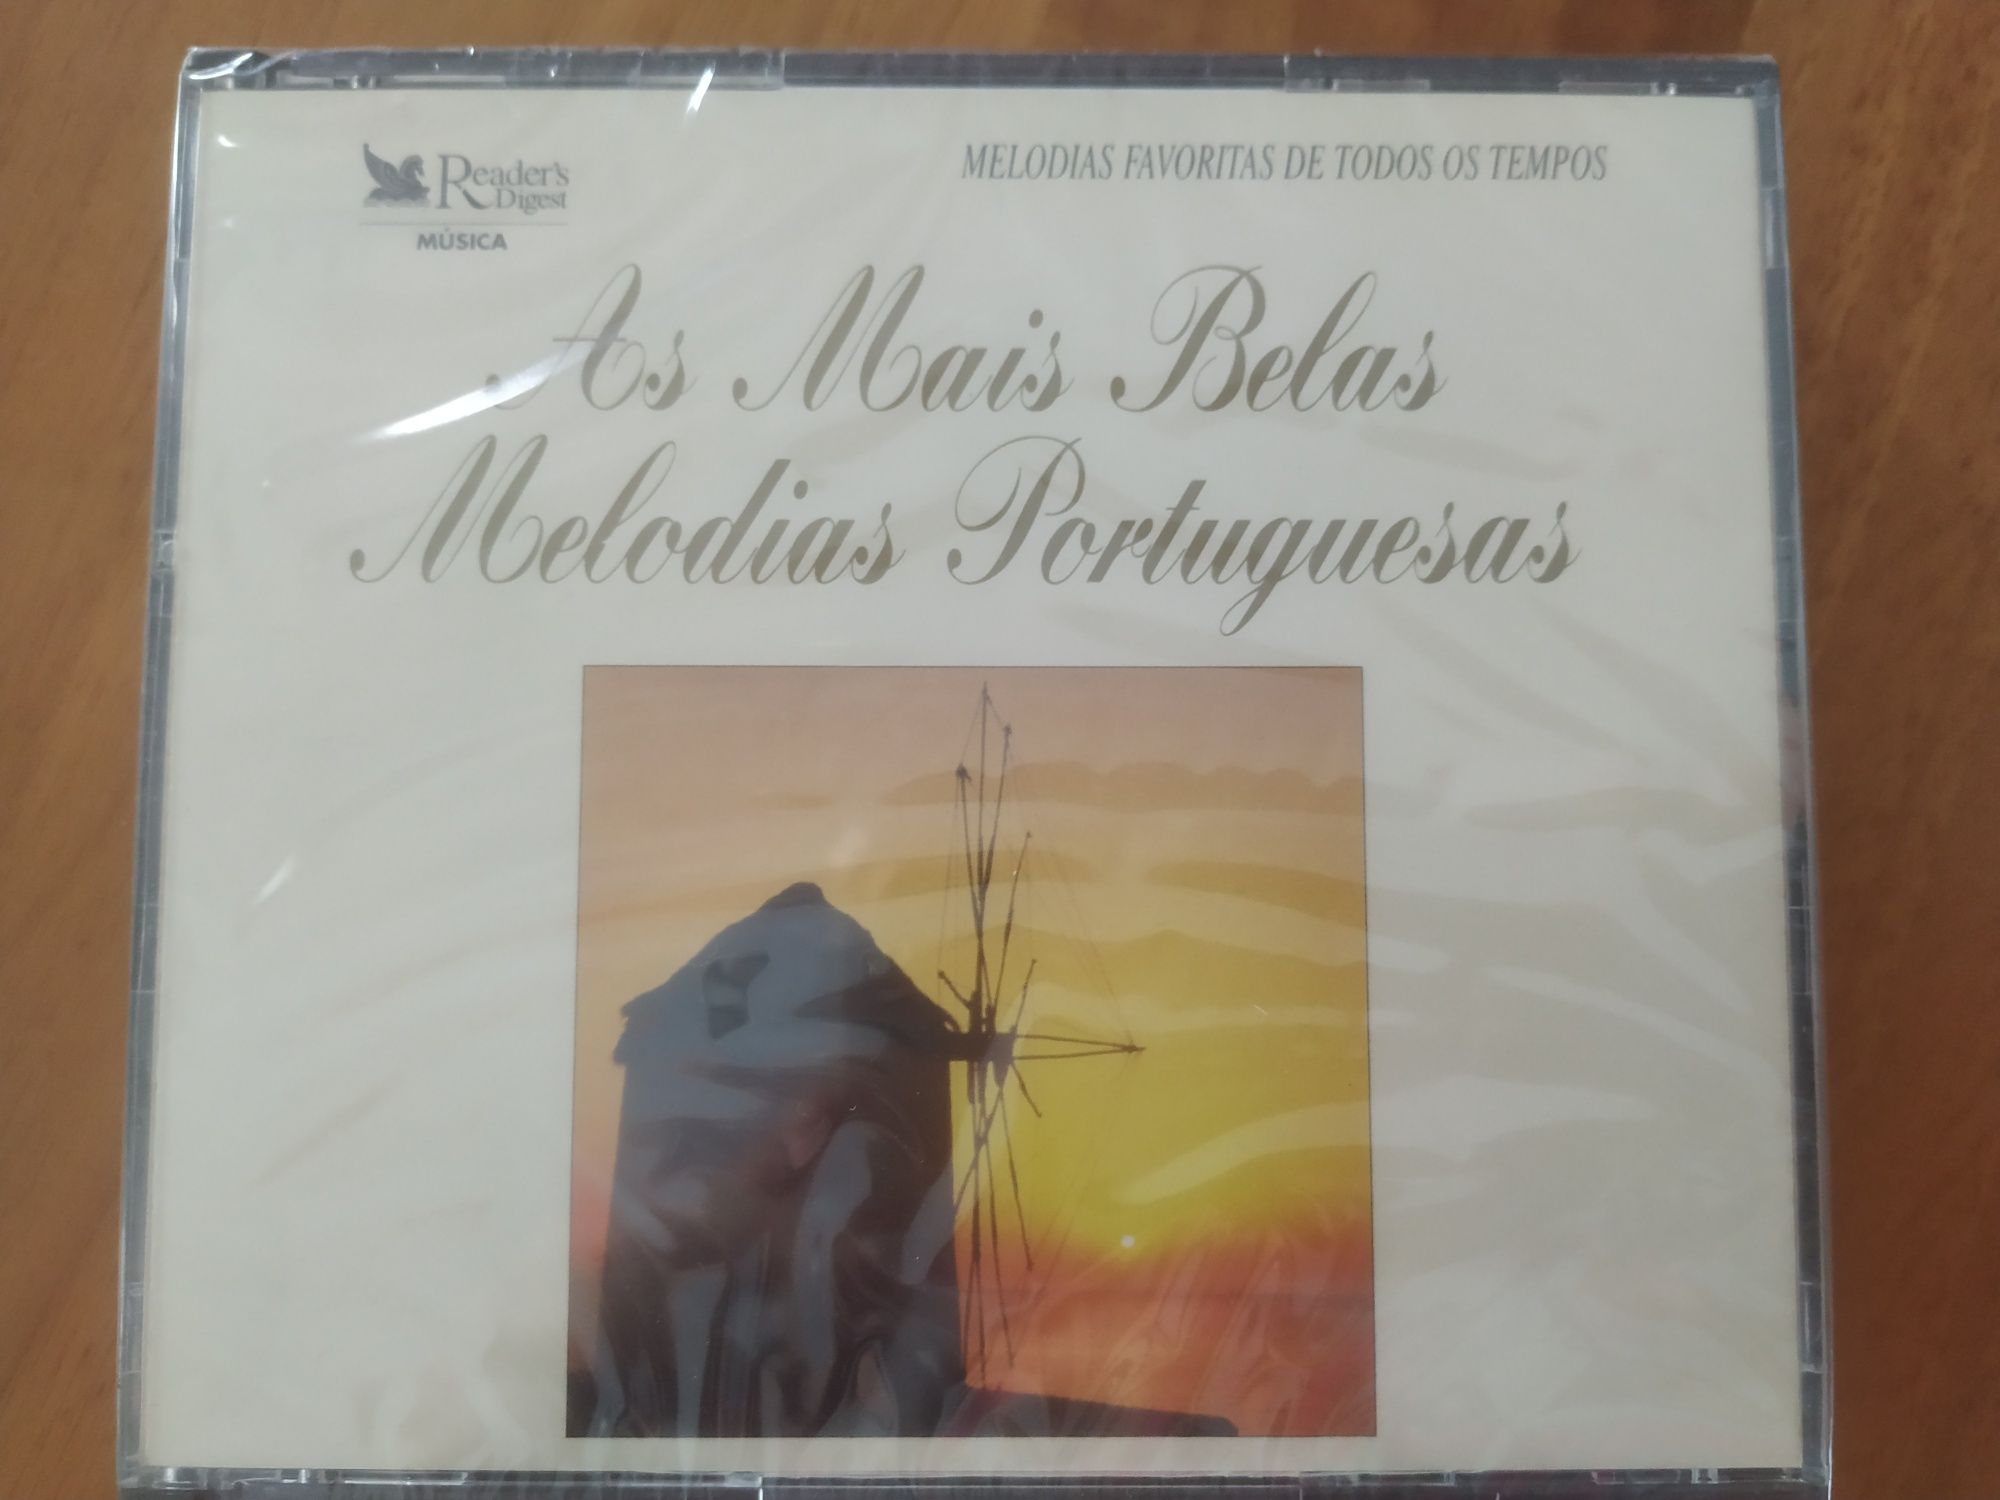 Triplo CD. Novo. Marcos da música portuguesa.